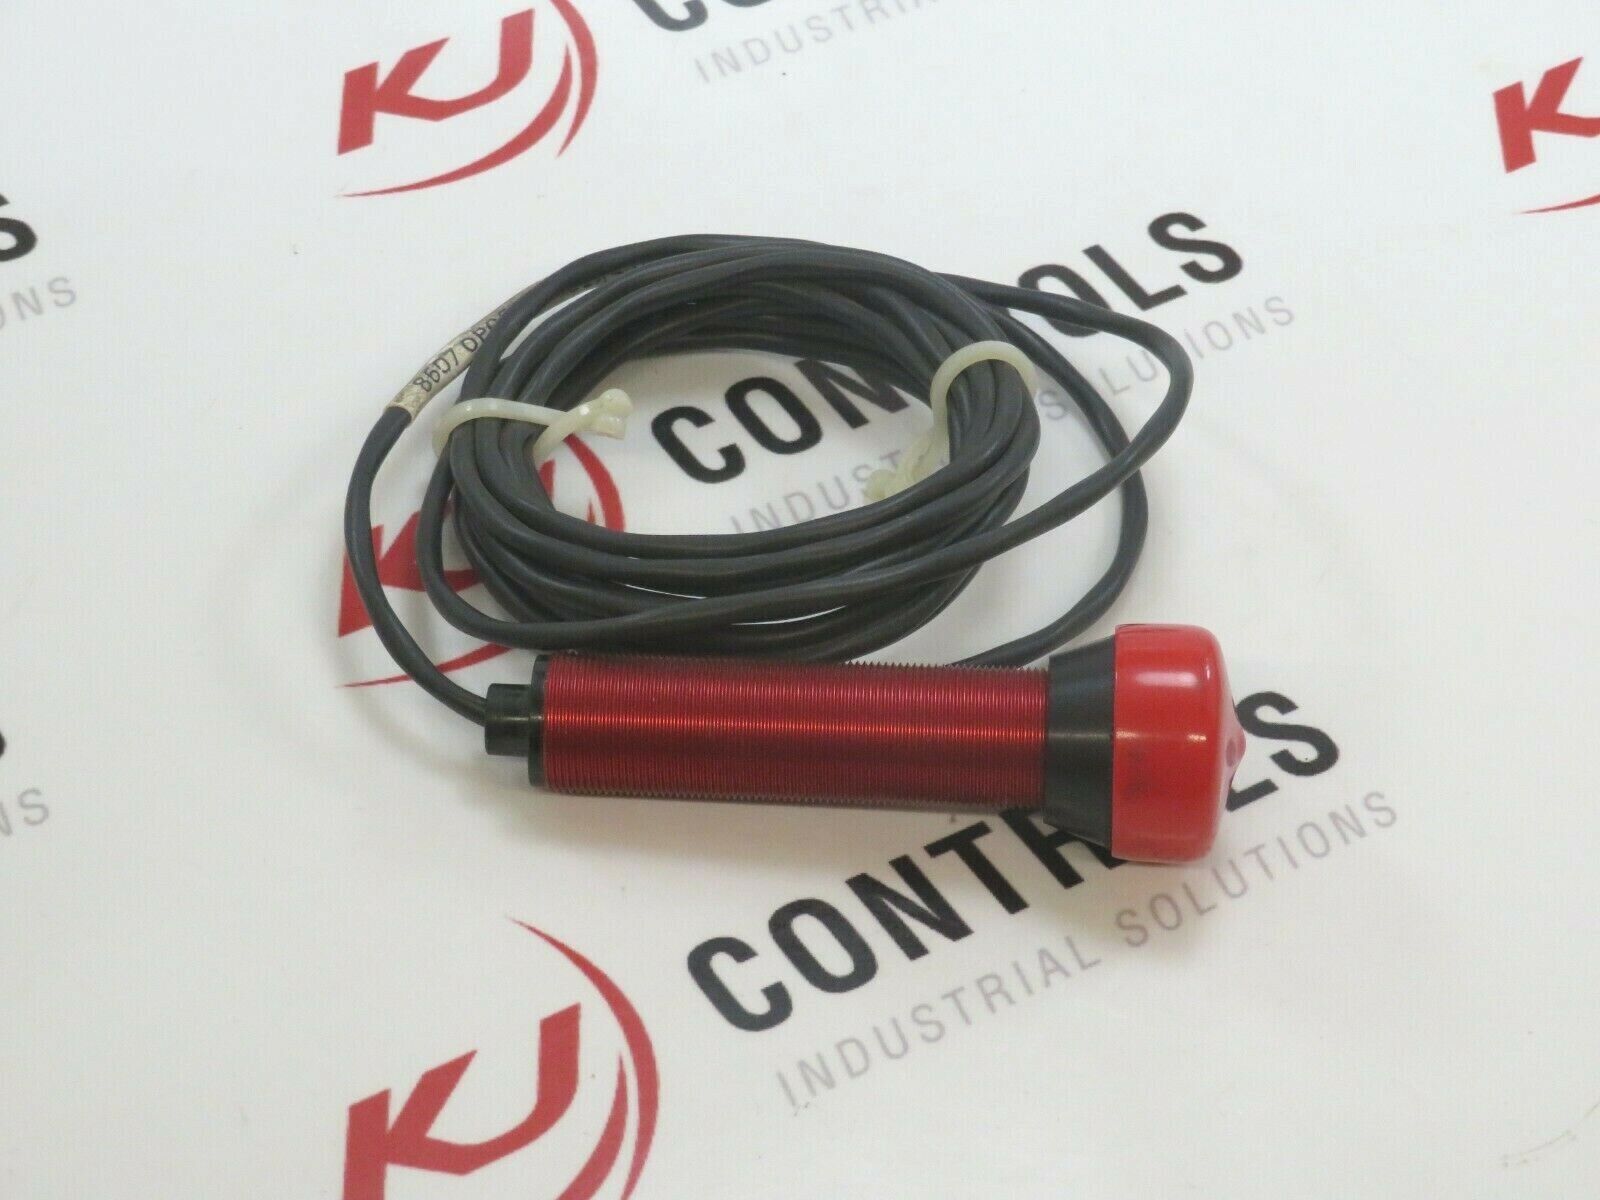 Eaton Cutler-Hammer Opcon 1161A-200 60-Series Photoelectric Sensor